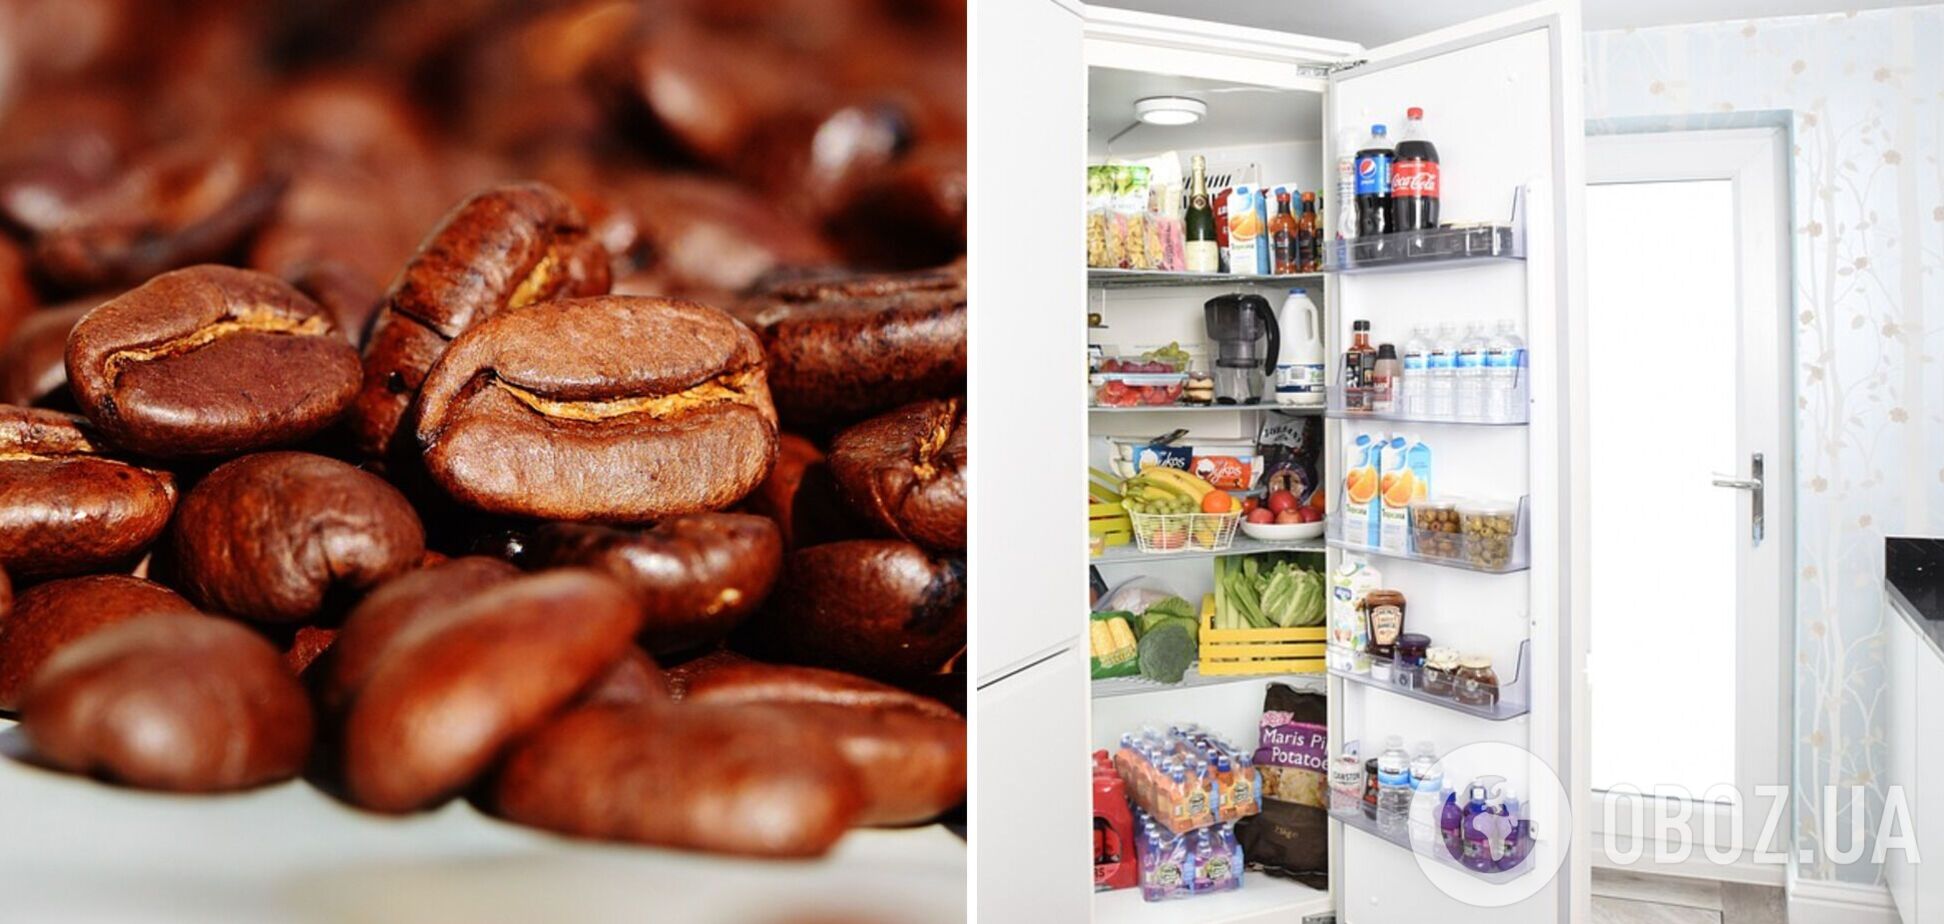 Хранение кофе в холодильнике: этот лайфхак поможет решить одну проблему